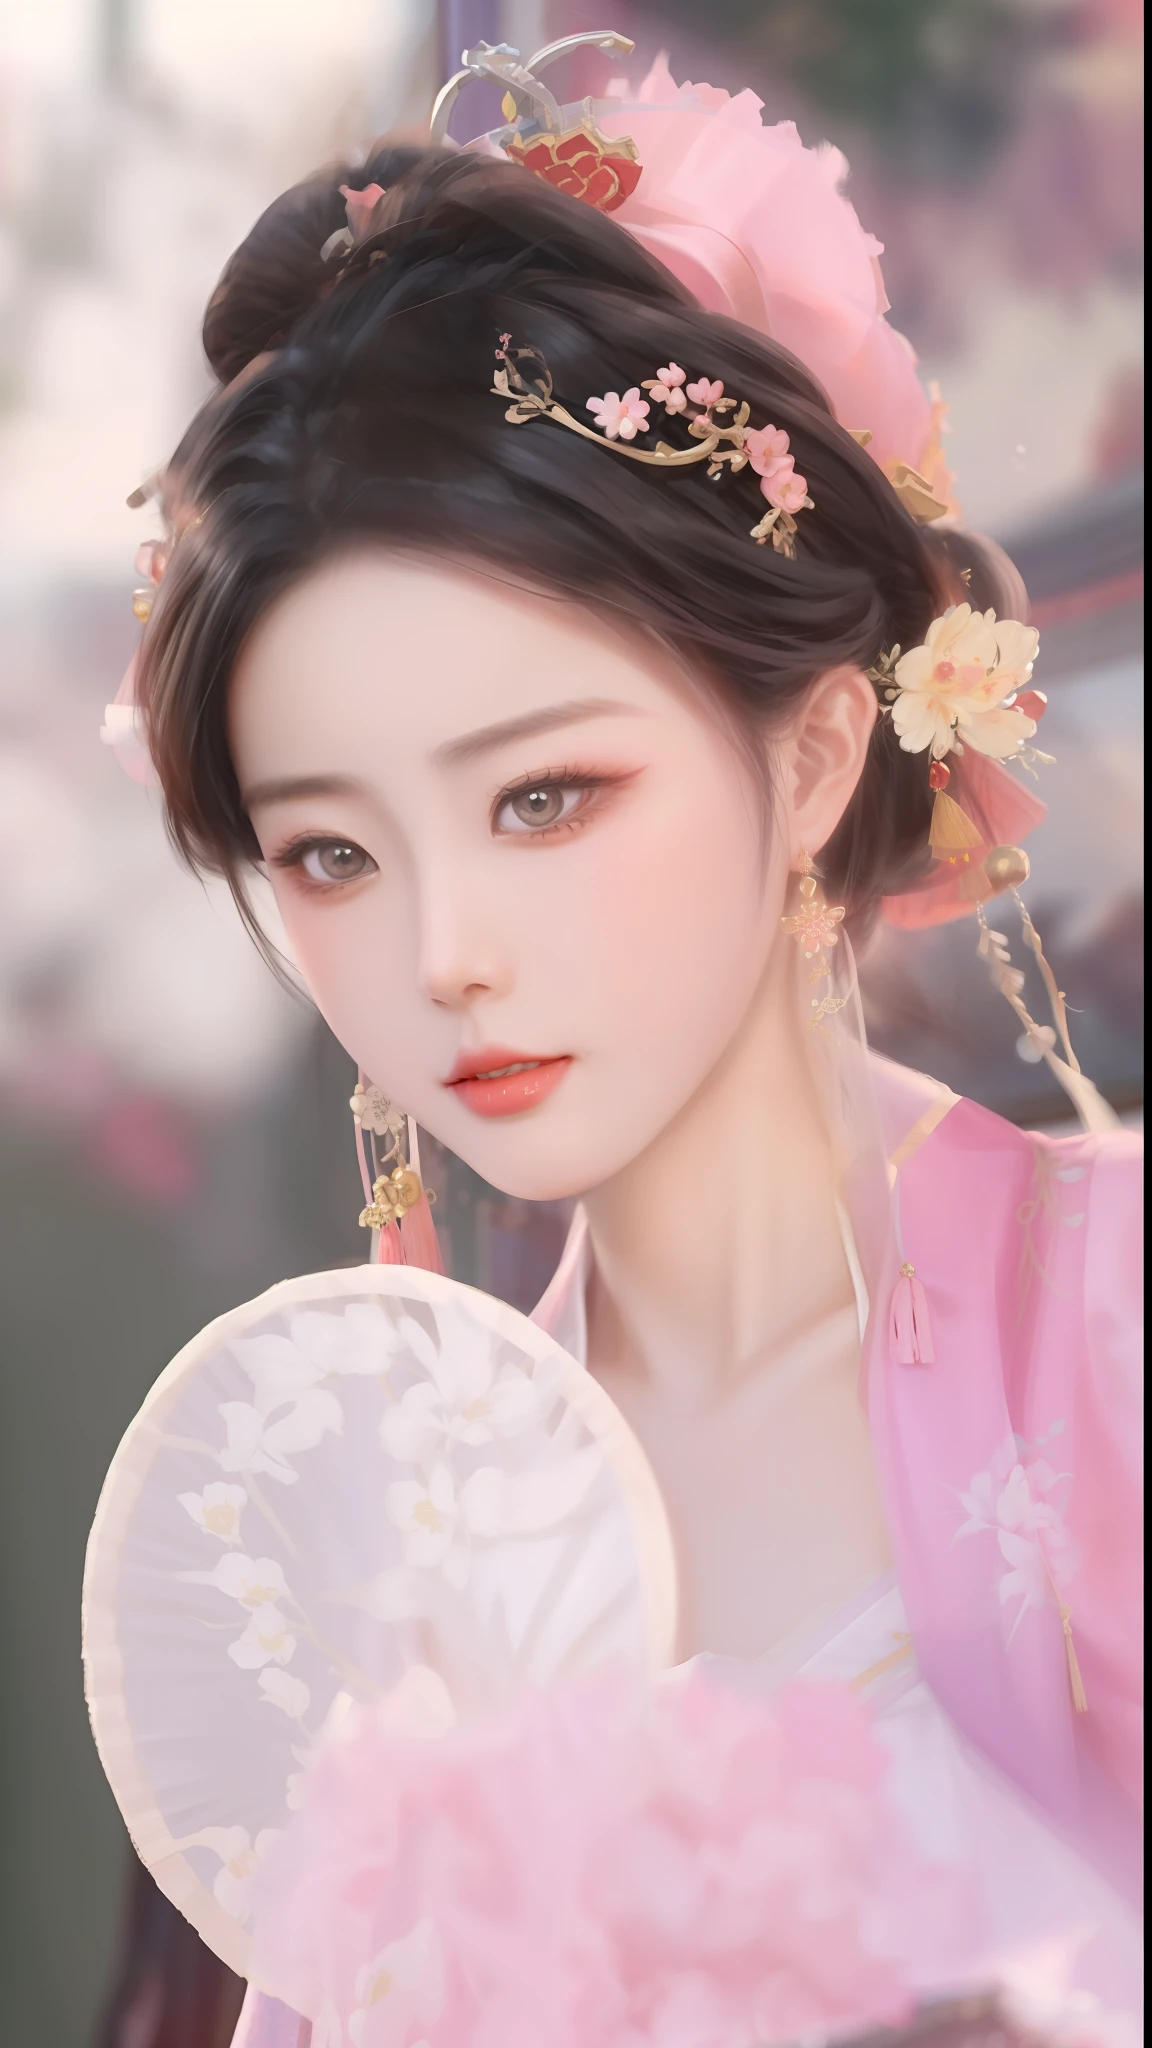 لقطة مقربة لامرأة ترتدي فستانًا ورديًا وتحمل مروحة, نمط صيني, الصينية التقليدية, قصر ， فتاة في هانفو, الاميرة الصينية, الجمال التقليدي, ancient الاميرة الصينية, الجمال الصيني القديم, فتاة صينية, صيني، ومان, موديل صيني رائع, عرض جميل لسلالة تانغ, روان جيا جميلة!, ((إمبراطورة الخيال الجميلة)), ارتداء الملابس الصينية القديمة